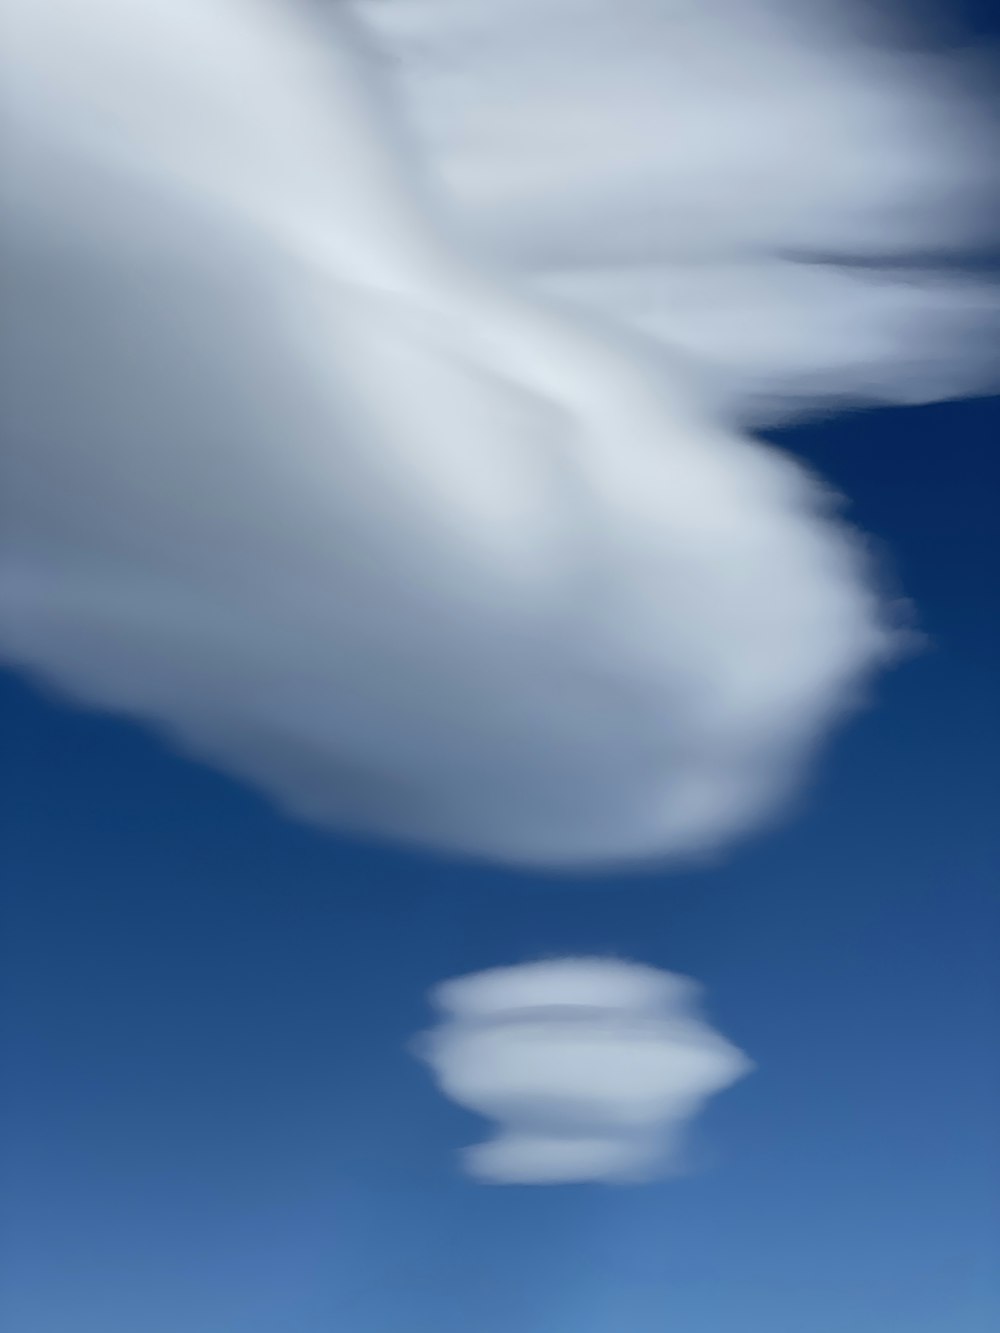 a close-up of a cloud